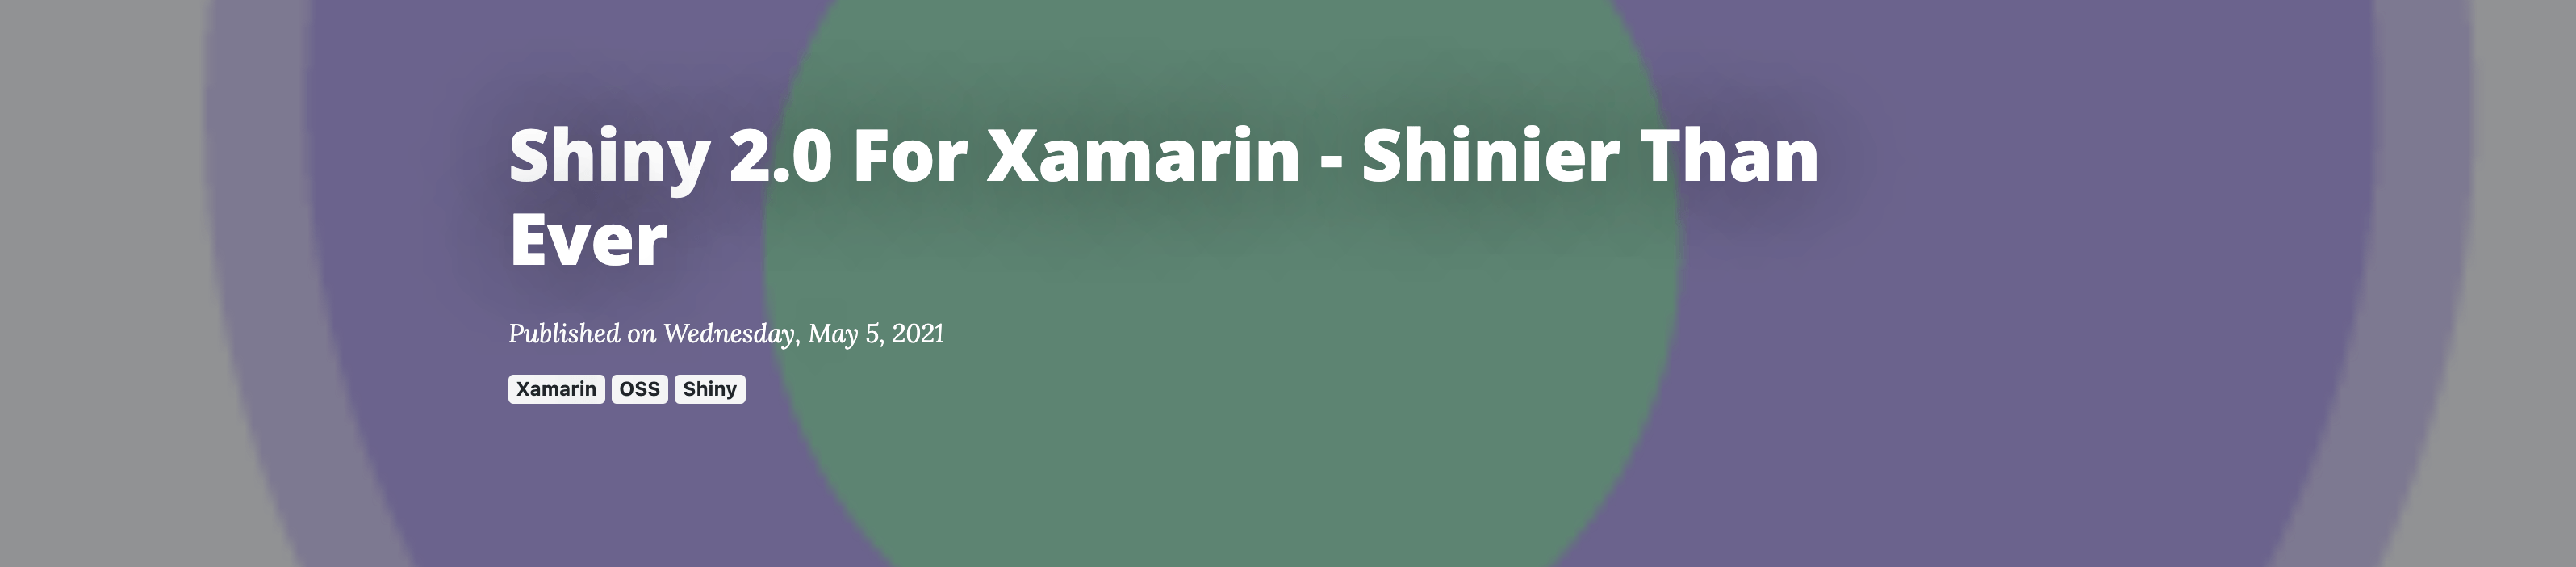 header bar for Shiny 2.0 For Xamarin - Shinier than Ever